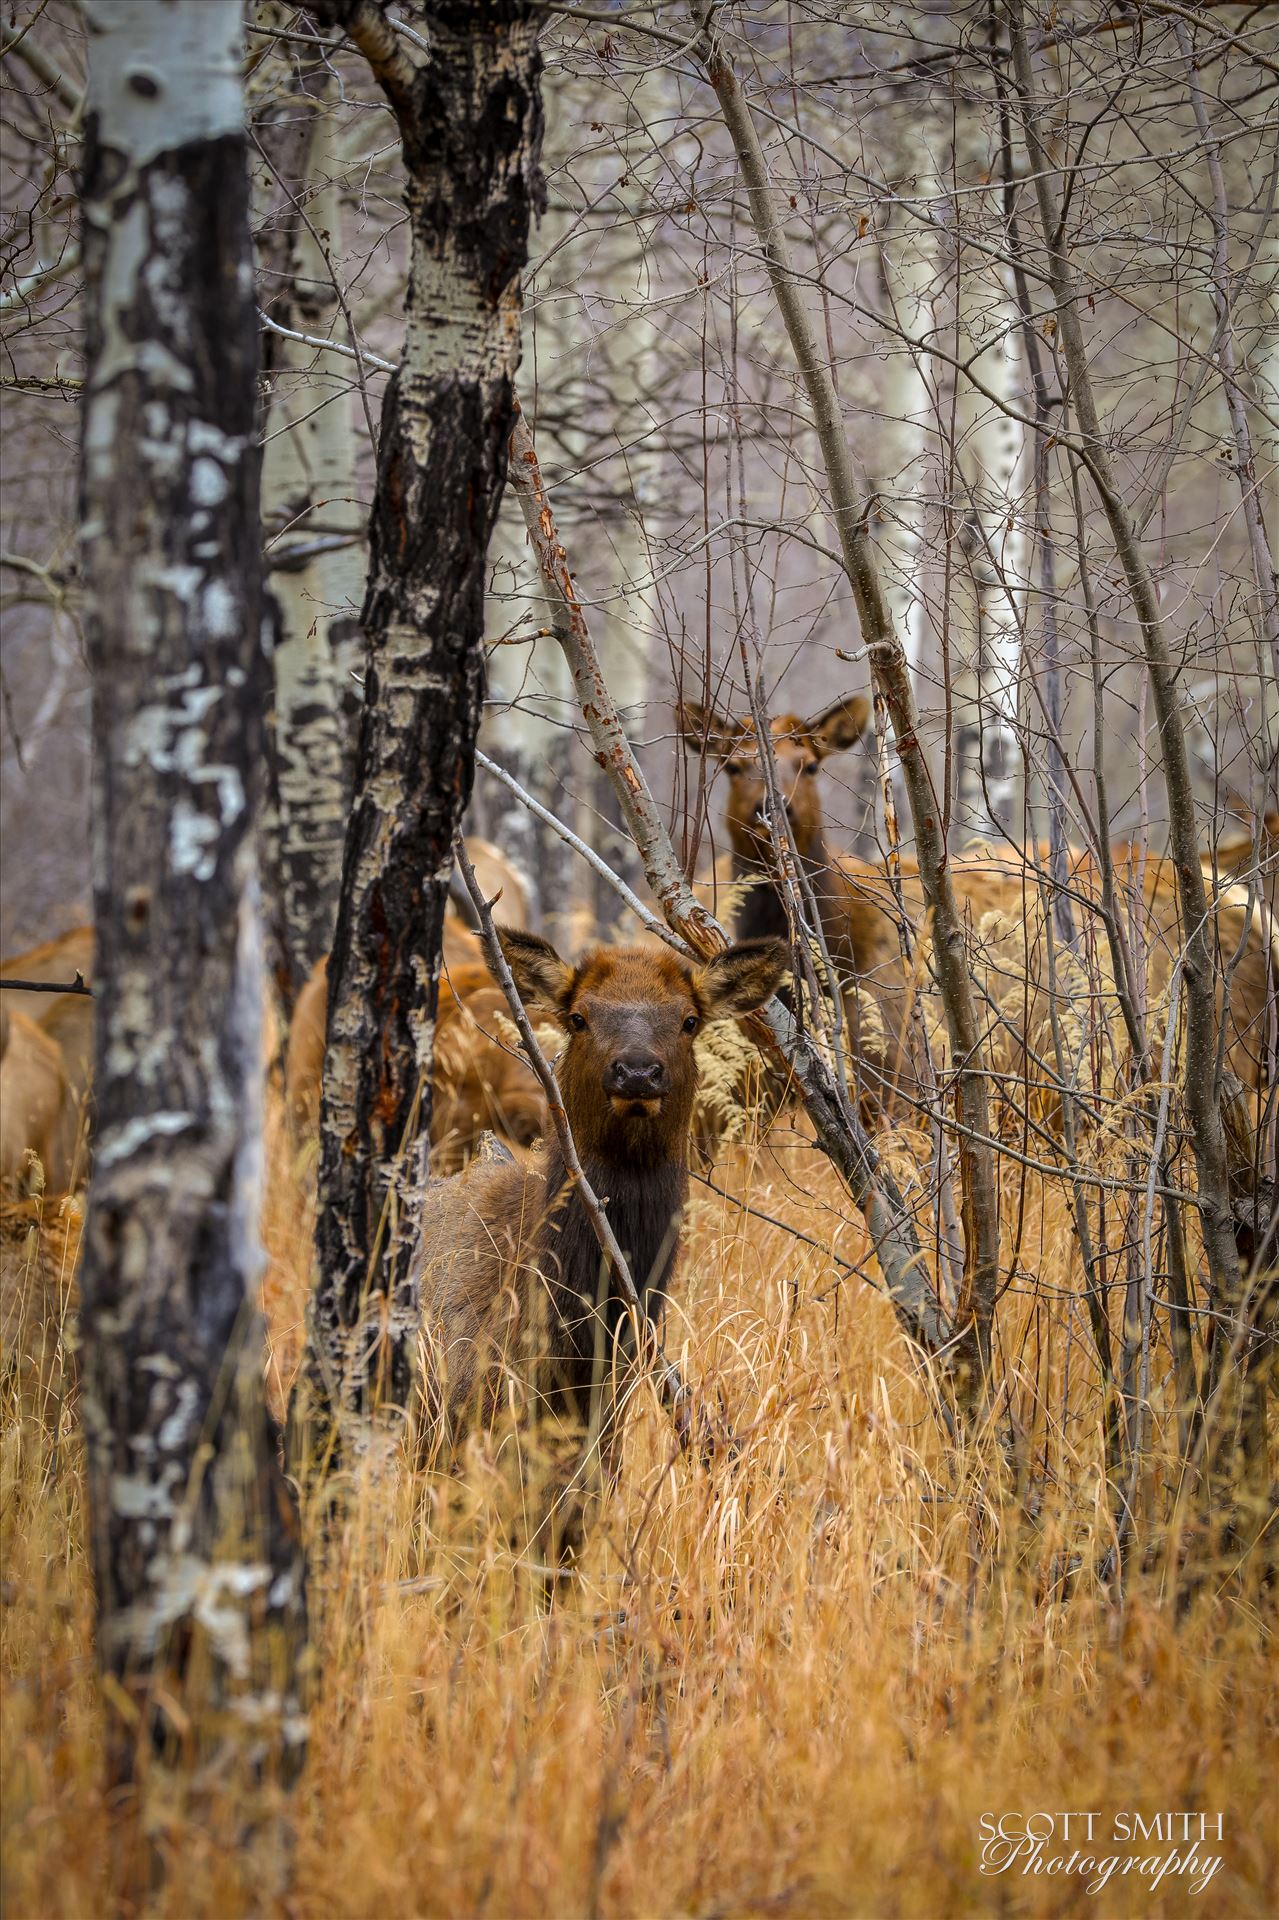 Sunday Elk No 02 A heard of Elk near the entrance to Rocky Mountain National Park, Estes Park, Colorado. by Scott Smith Photos